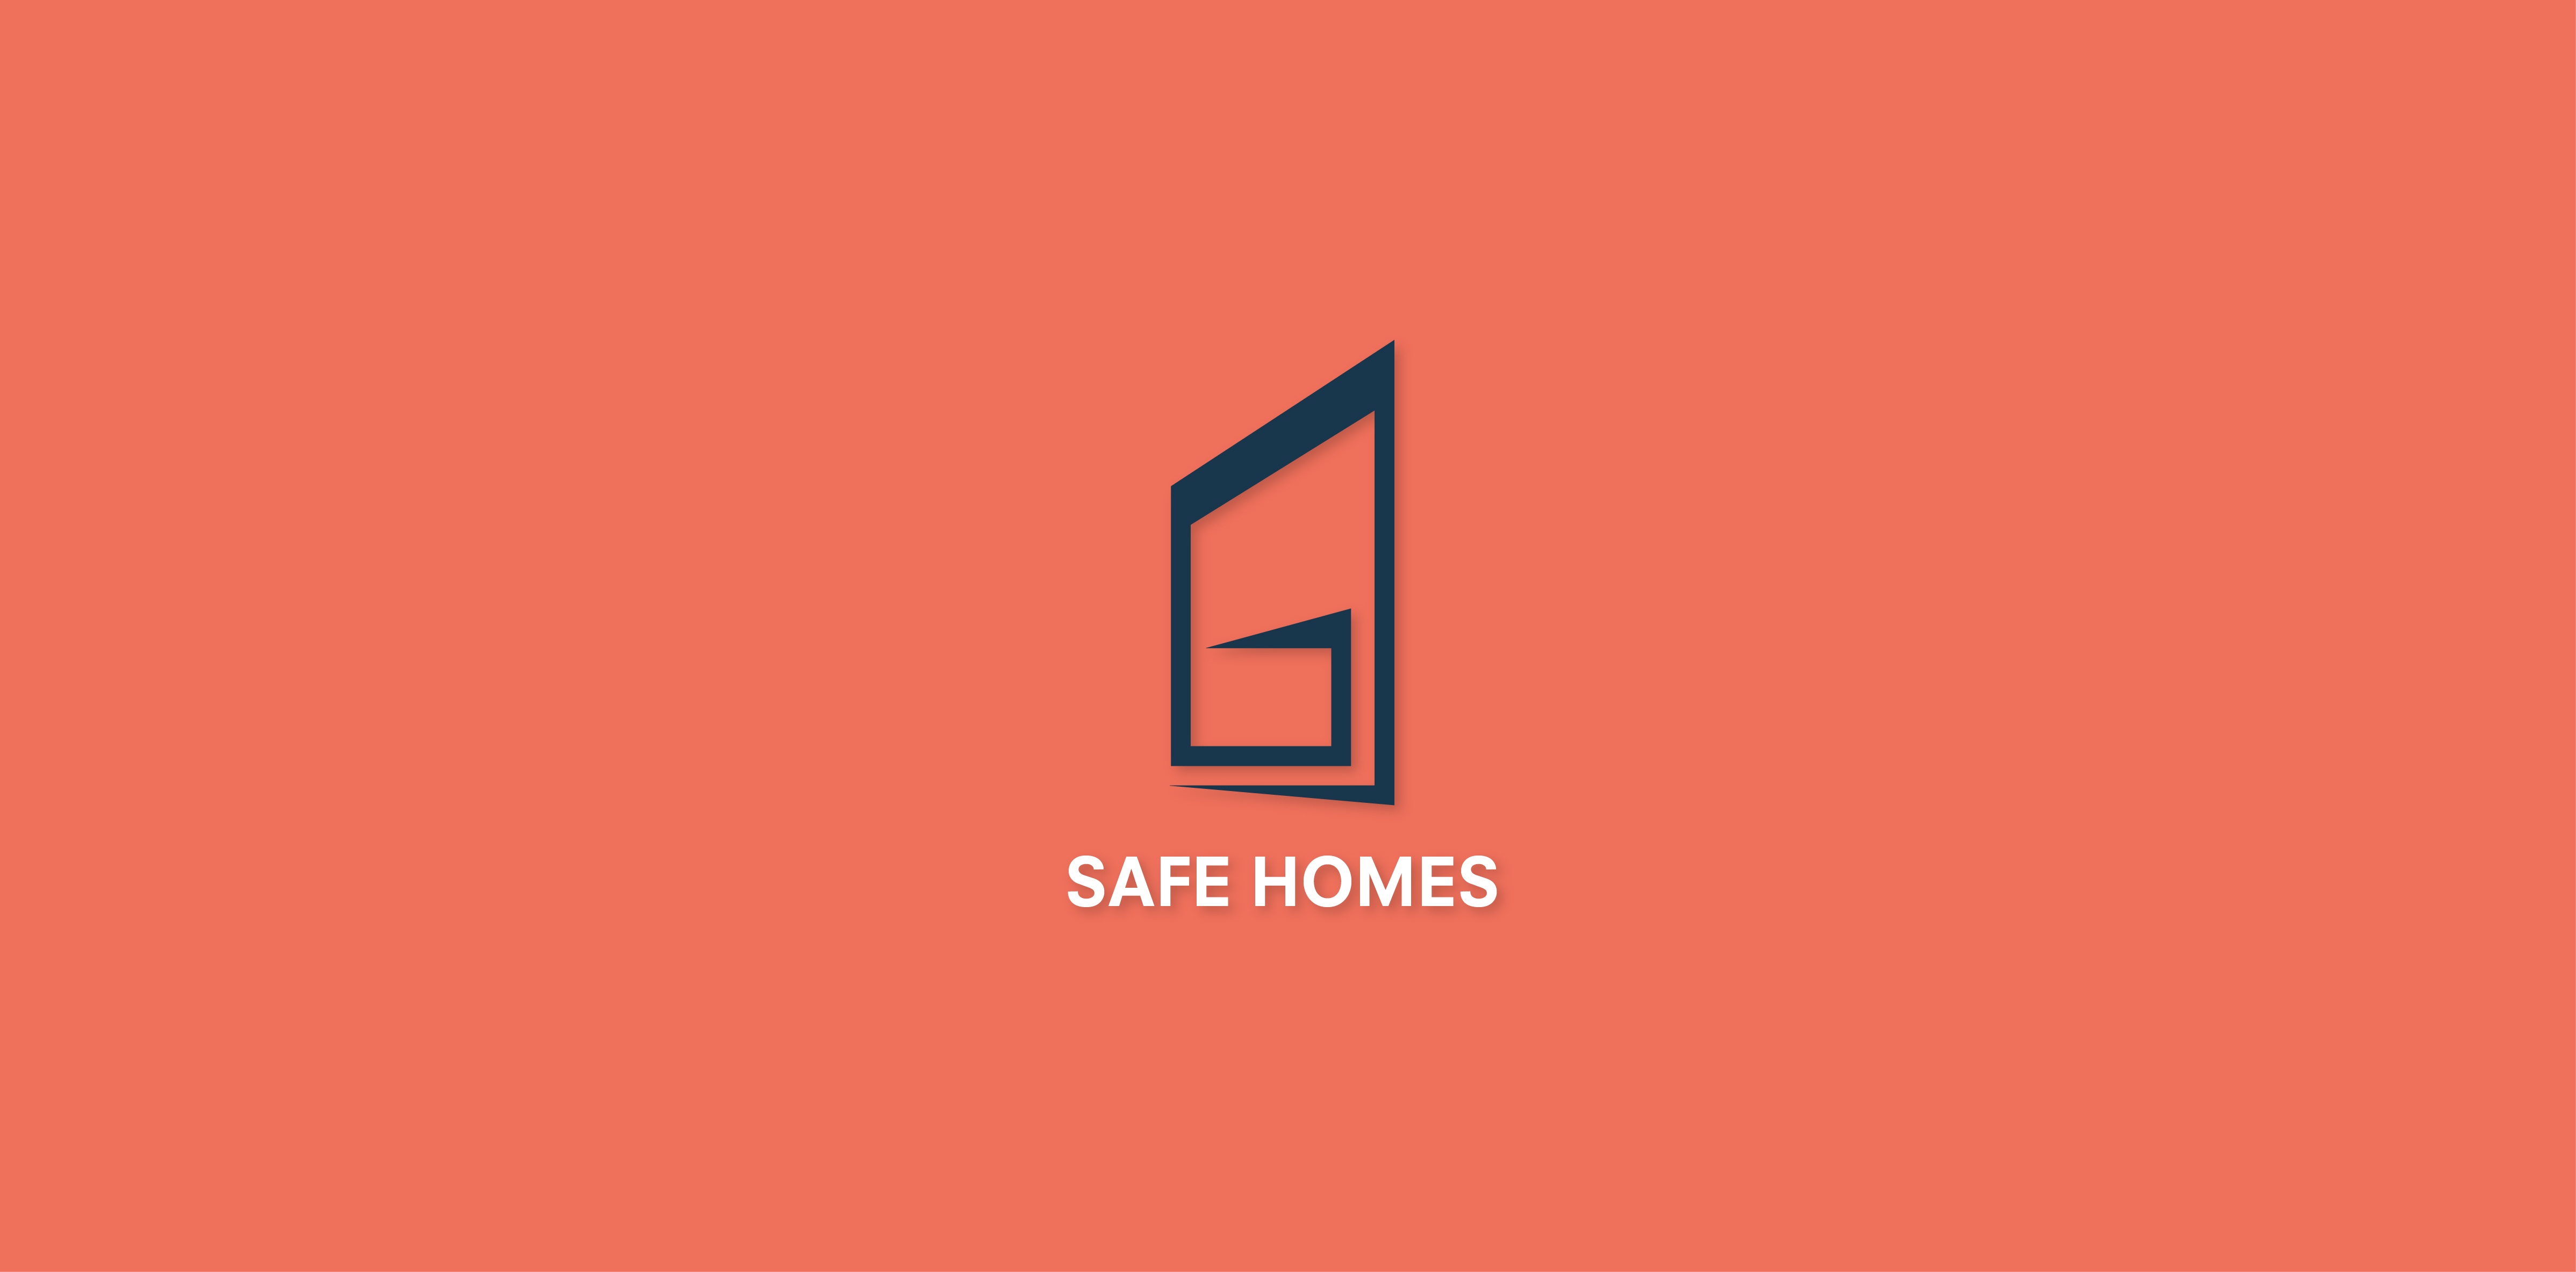 Safe homes